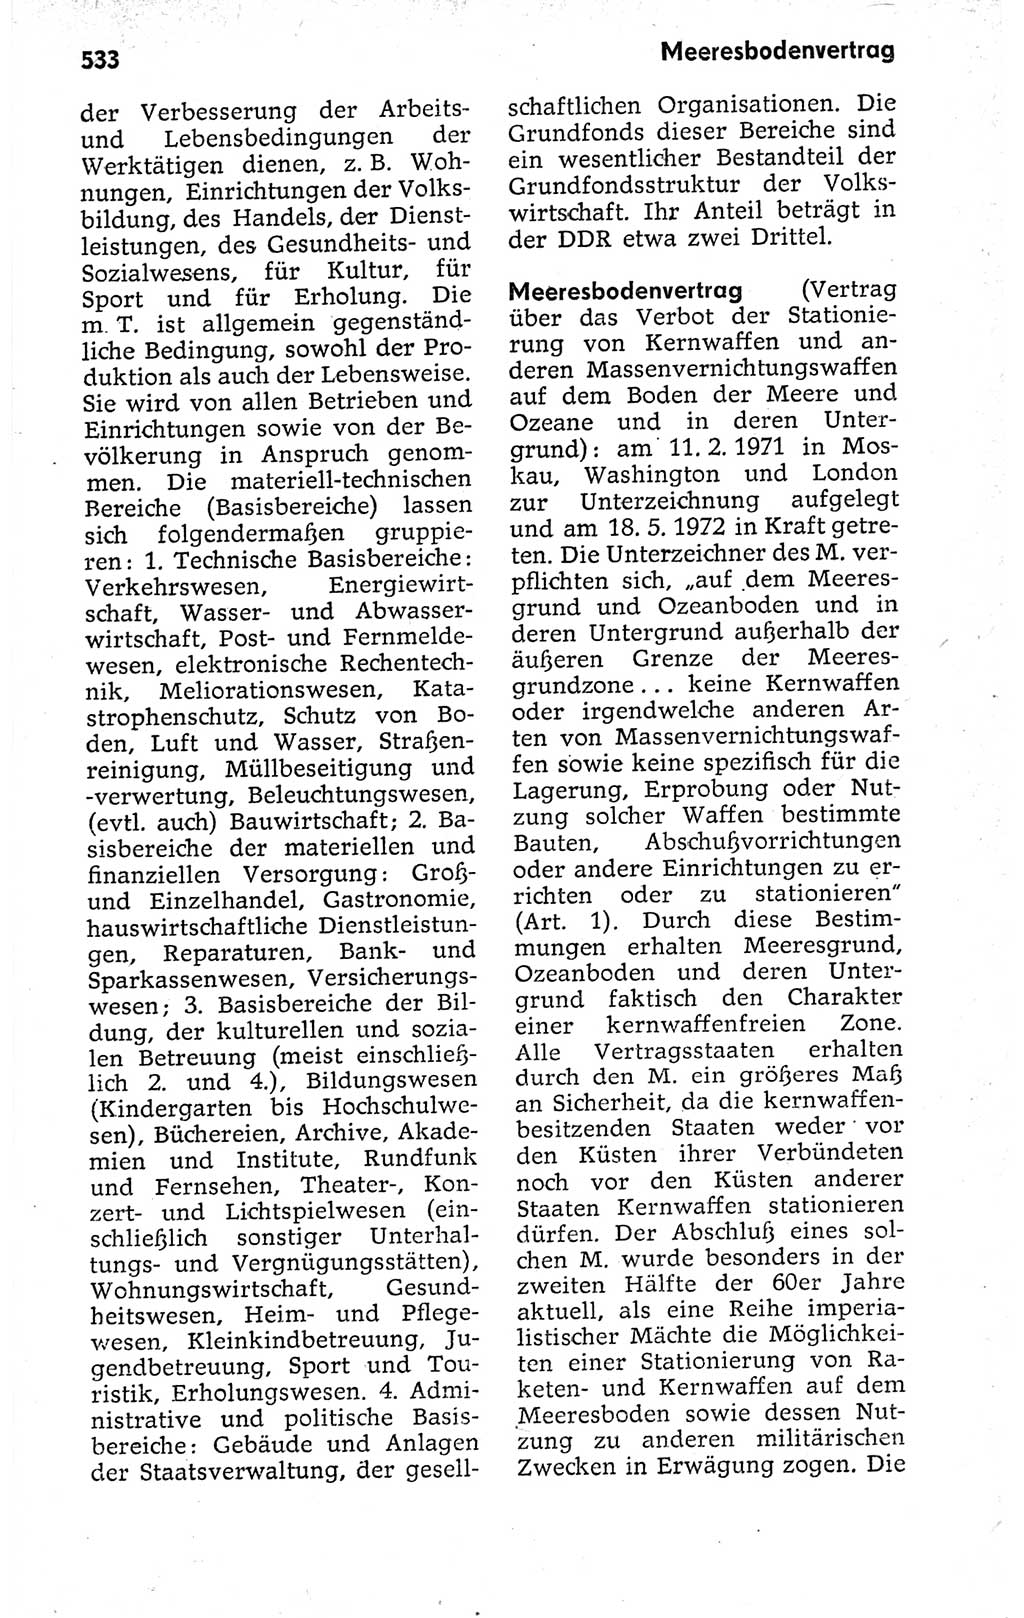 Kleines politisches Wörterbuch [Deutsche Demokratische Republik (DDR)] 1973, Seite 533 (Kl. pol. Wb. DDR 1973, S. 533)